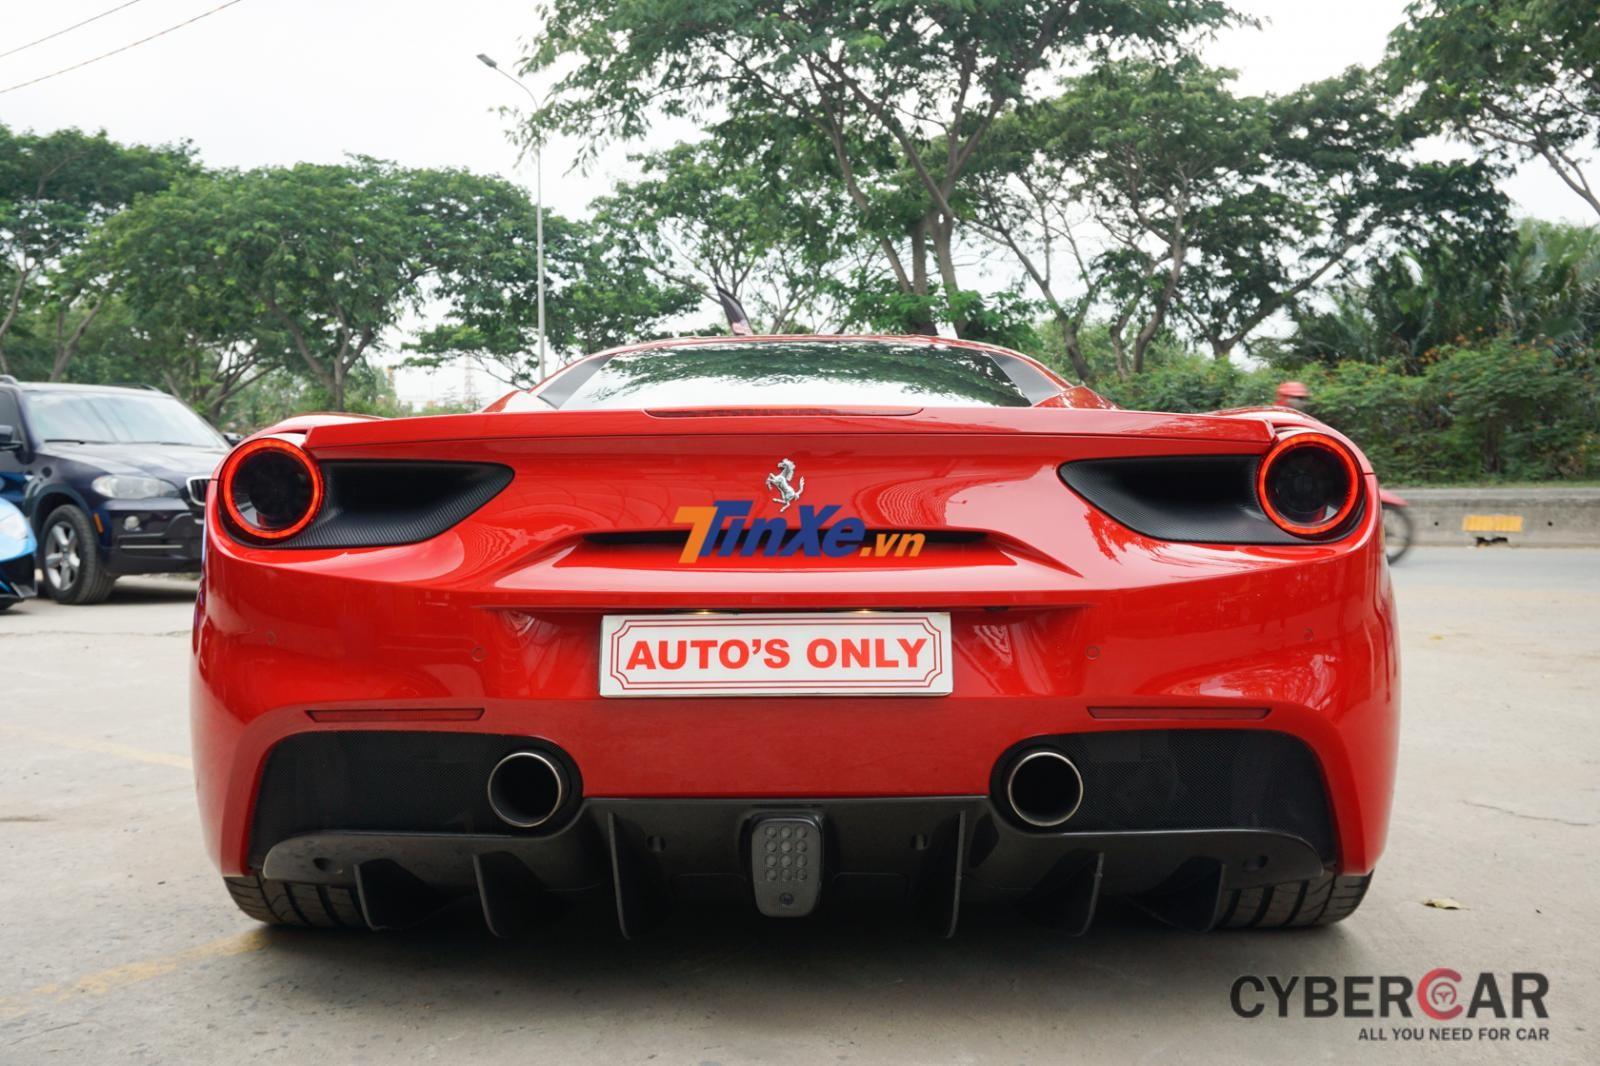  Giới mê xe rất vui mừng khi thấy siêu xe Ferrari 488 GTB của Tuấn Hưng đã tái xuất sau tai nạn